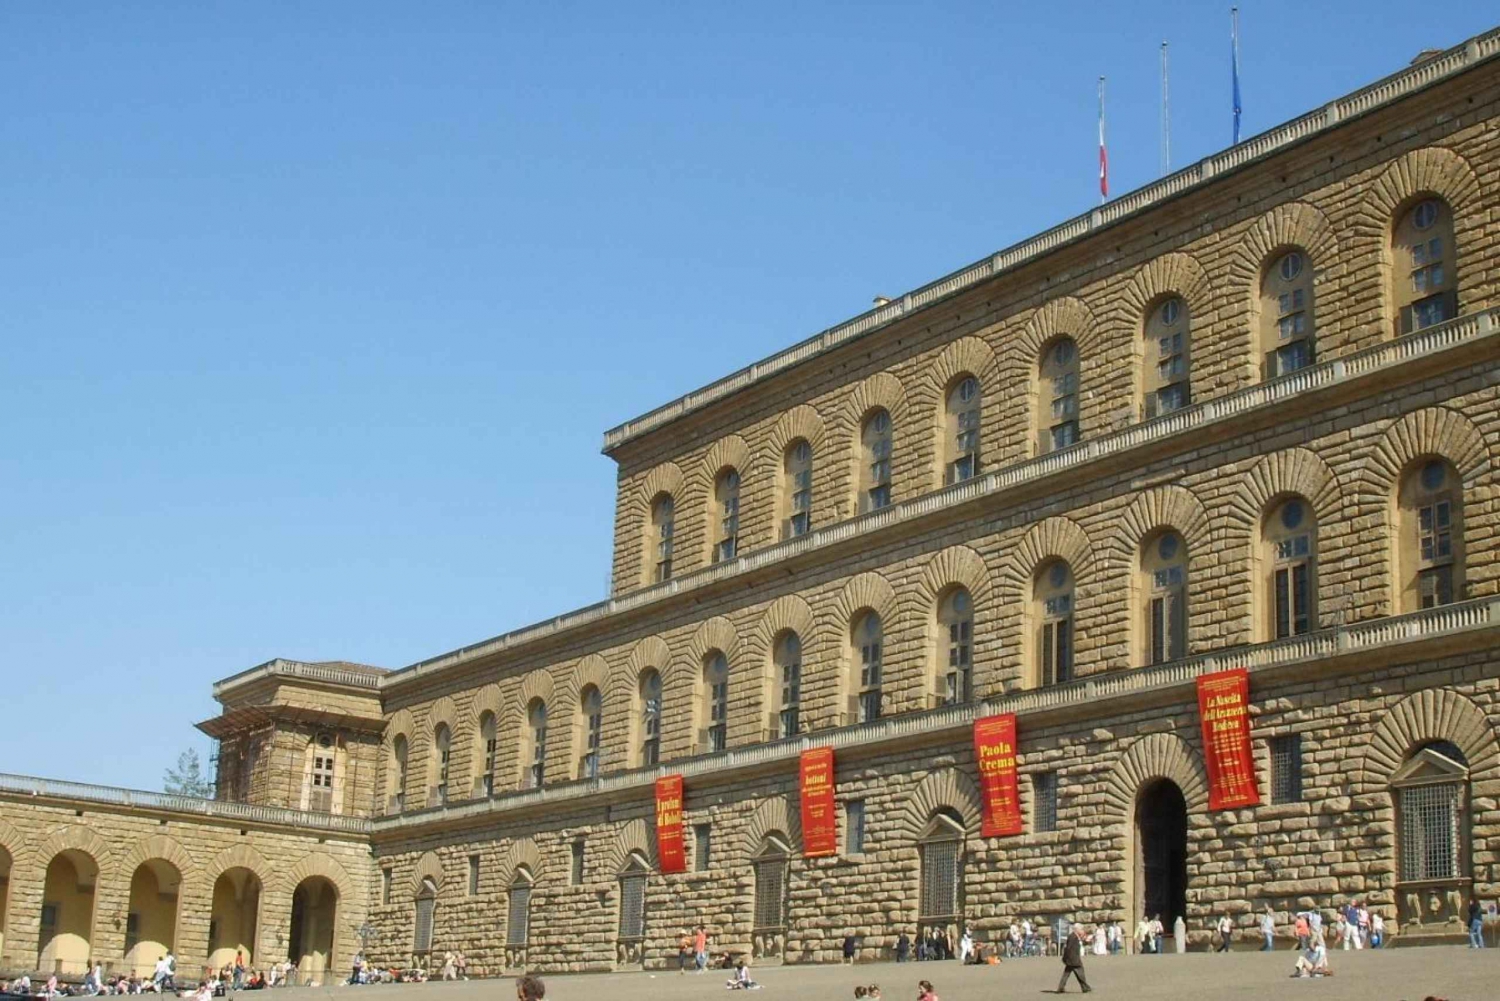 Florence : billet d'entrée au Palais Pitti et visite guidée à pied